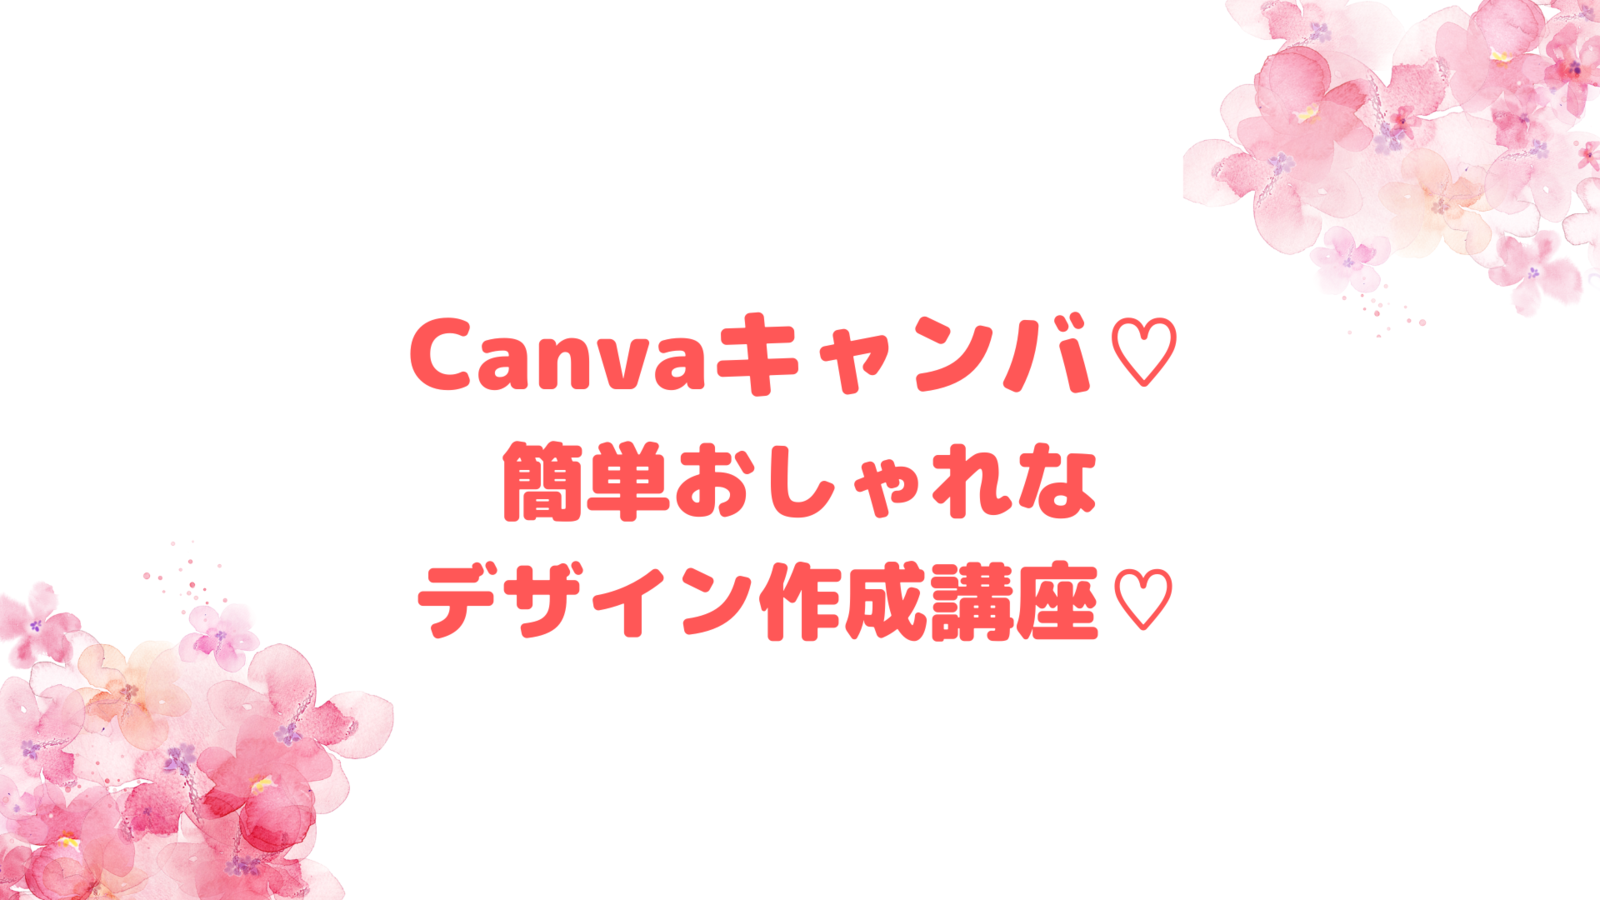 Canvaキャンバ♡簡単おしゃれなデザイン作成講座♡